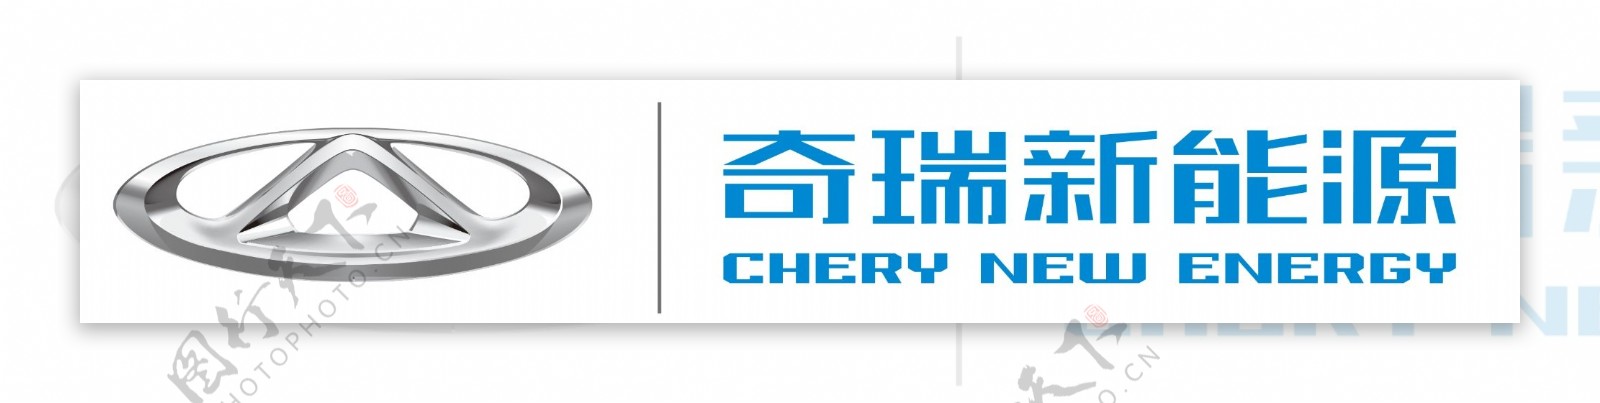 奇瑞新能源logo